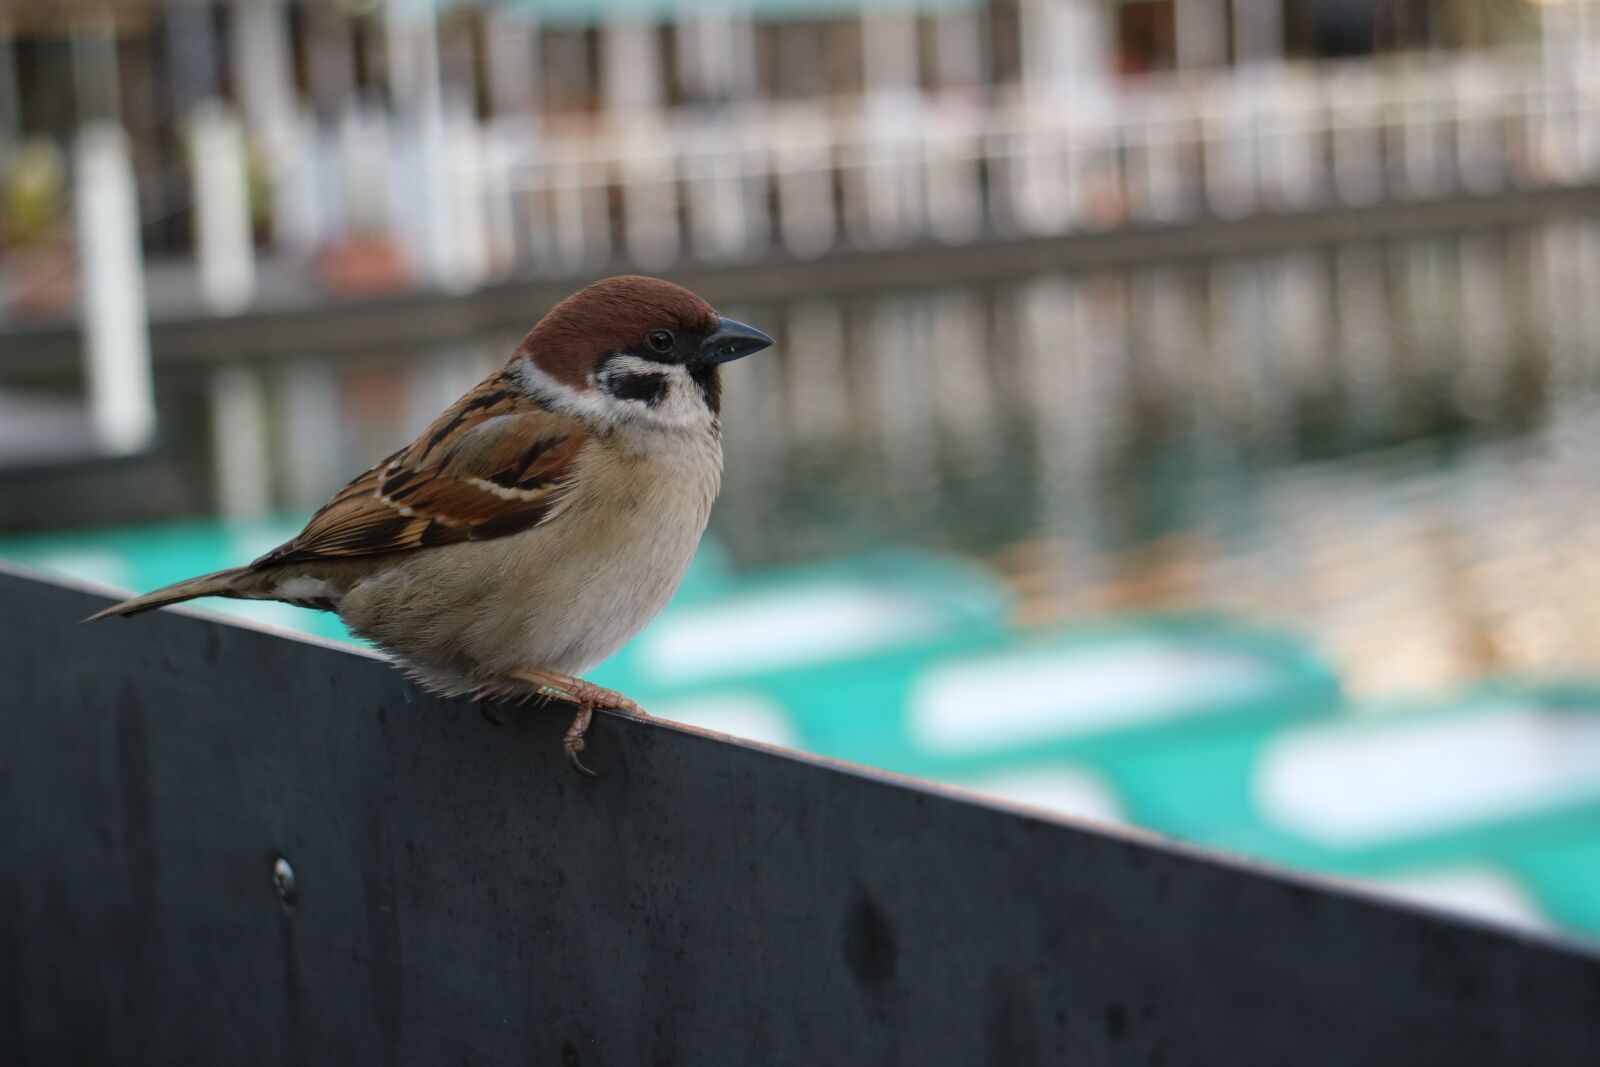 Canon EOS M3 sample photo. Sparrow, bird, beak photography